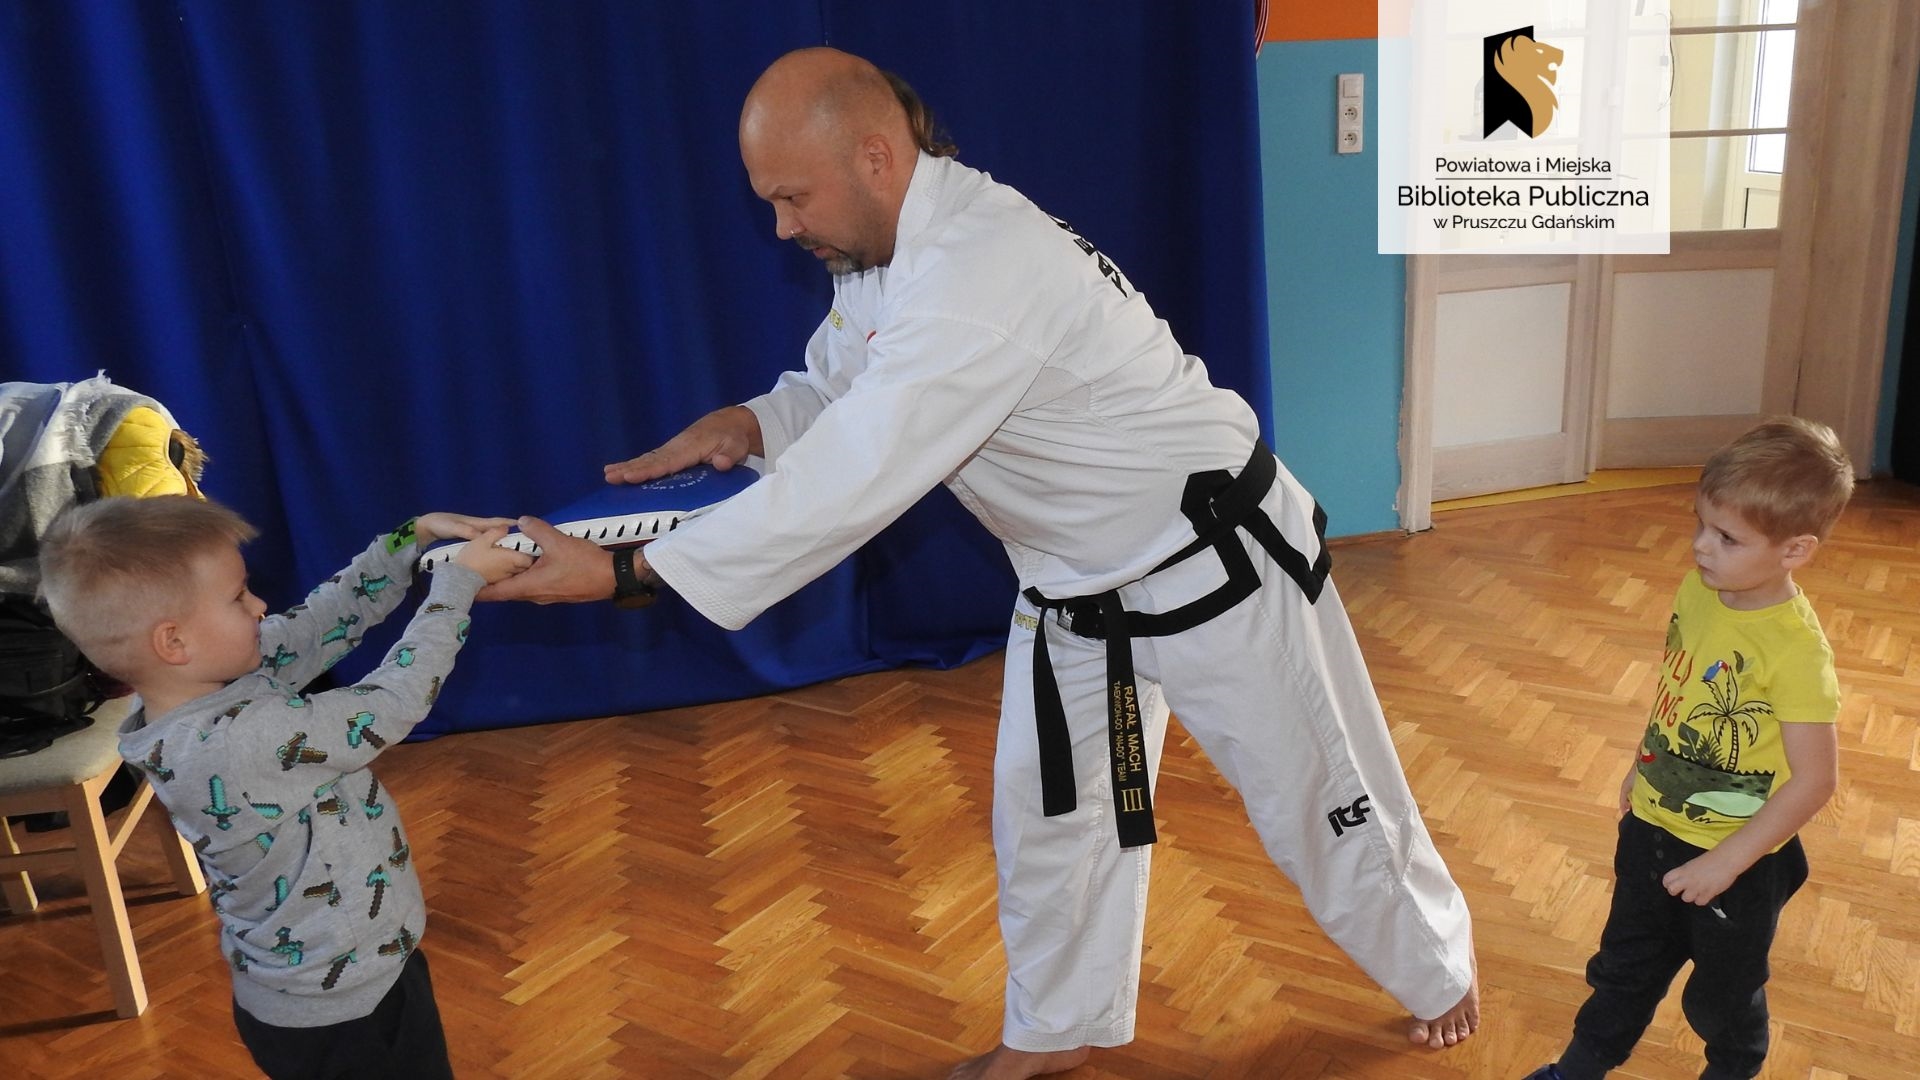 Trener Rafał Mach trzyma worek do ćwiczeń taekwondo wraz z chłopcem, pokazując odpowiednie ułożenie worka. Obok sytuacji przygląda się kolejny chłopiec.